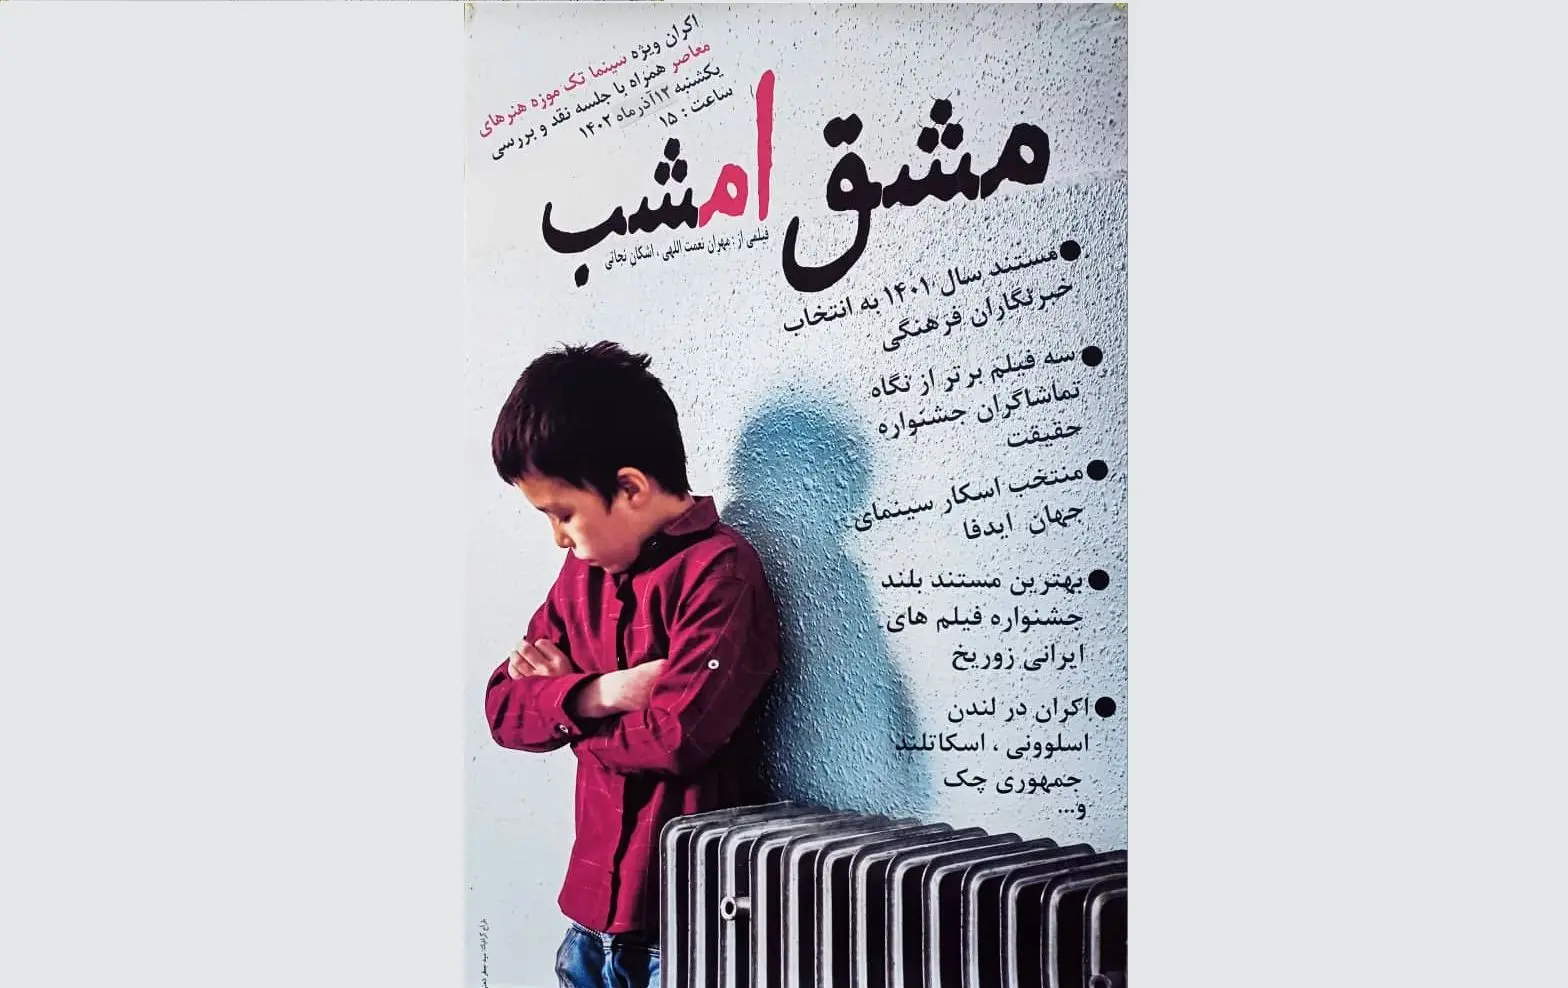 اکران فیلم بروزرسانی شده کیارستمی در  موزه هنرهای معاصر